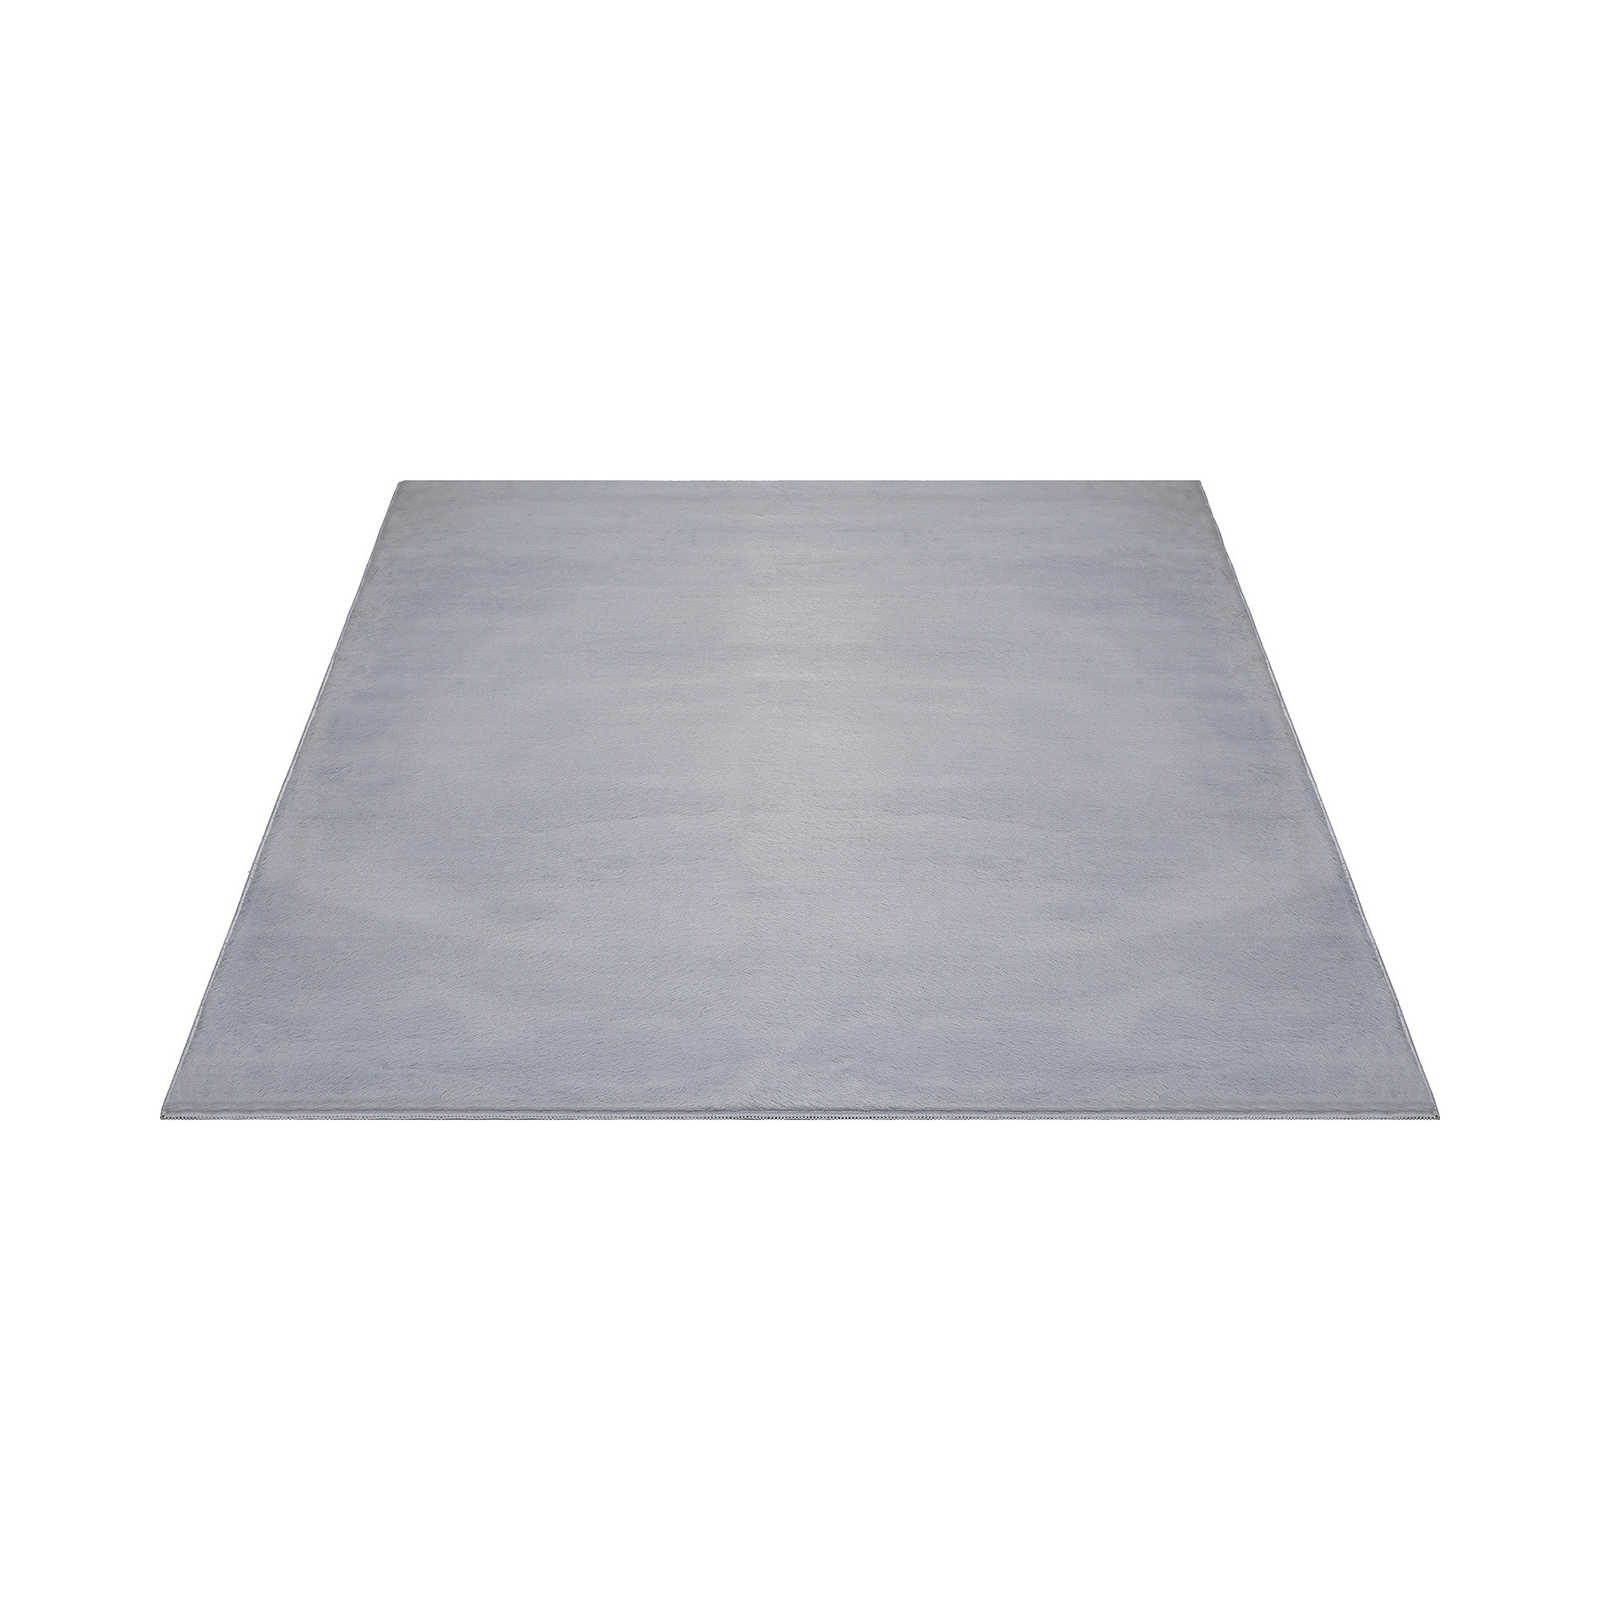 Angenehmer Hochflor Teppich in sanften Grau – 280 x 200 cm
